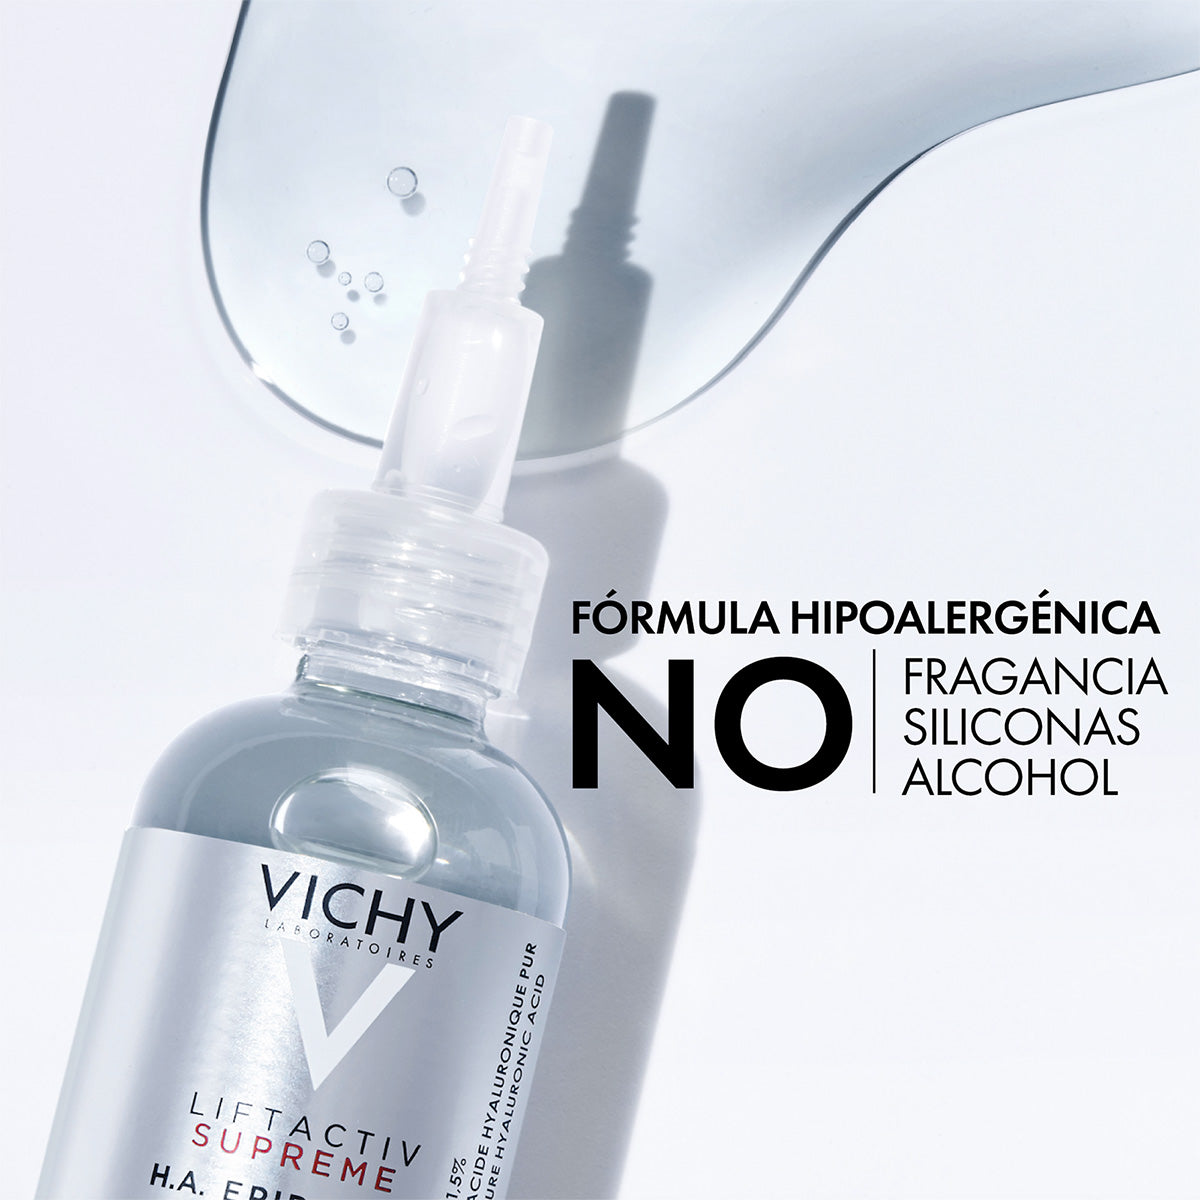 Vichy Liftactiv Supreme HA Epidermic Filler, Suero de Ácido Hialurónico, rostro y ojos 30ml